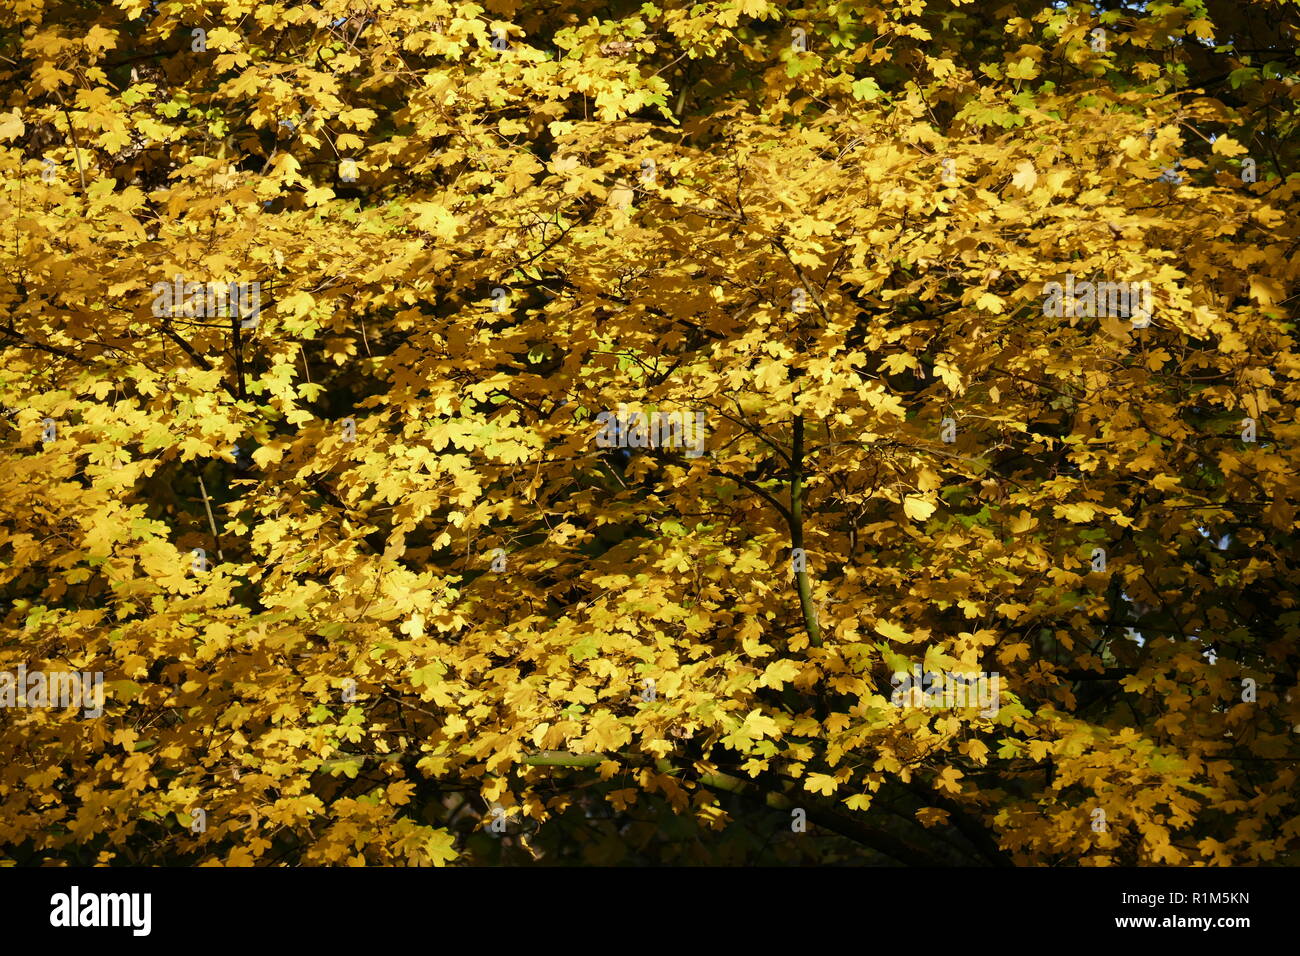 yellow discolored oak leaves on branches, Germany, Europe  I gelb verfärbte Eichenblätter an Ästen, Deutschland, Europa I Stock Photo